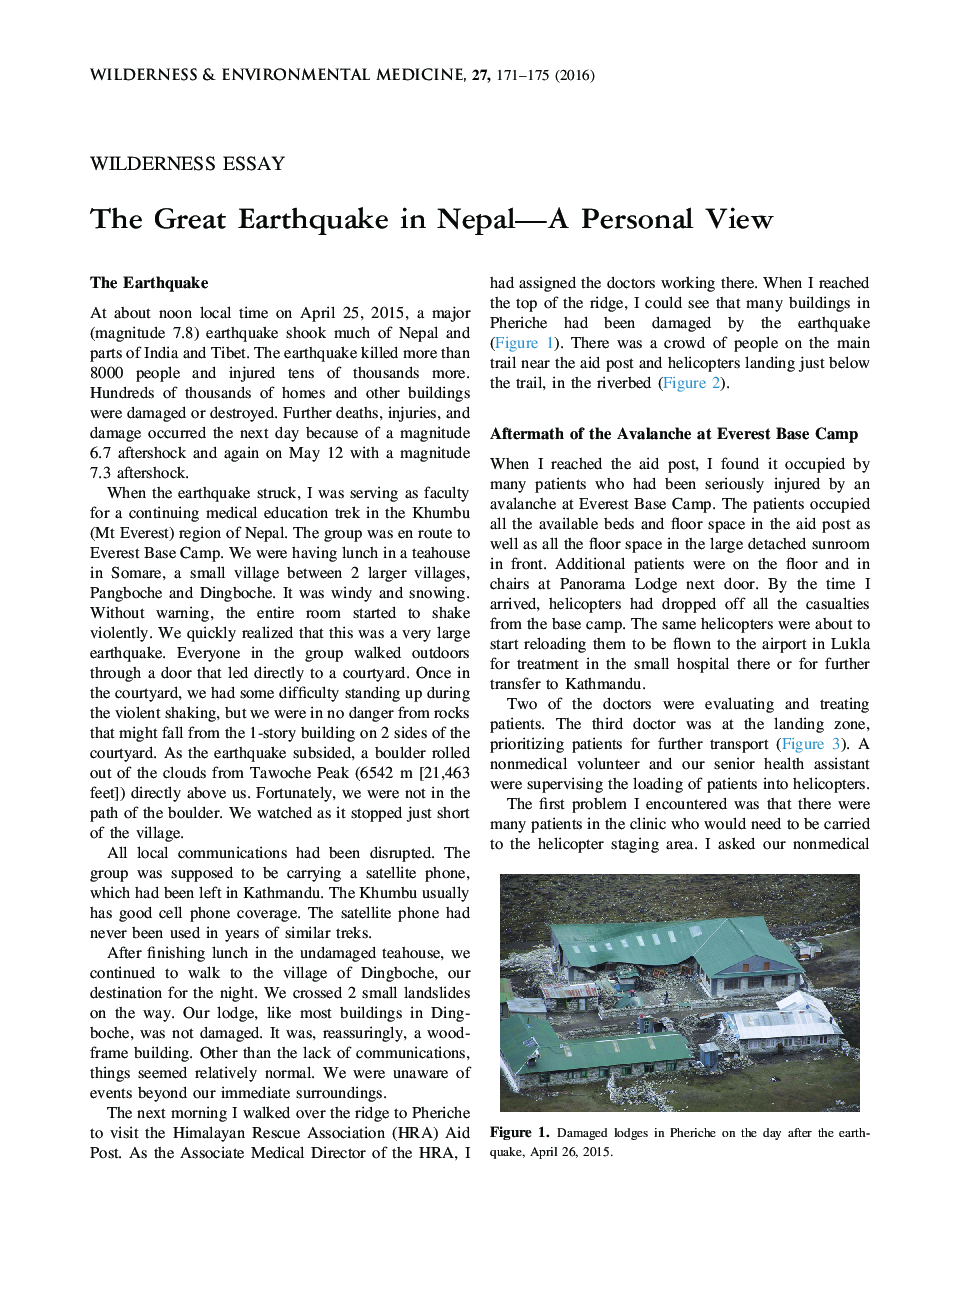 زلزله بزرگ در نمایش شخصی نپال 